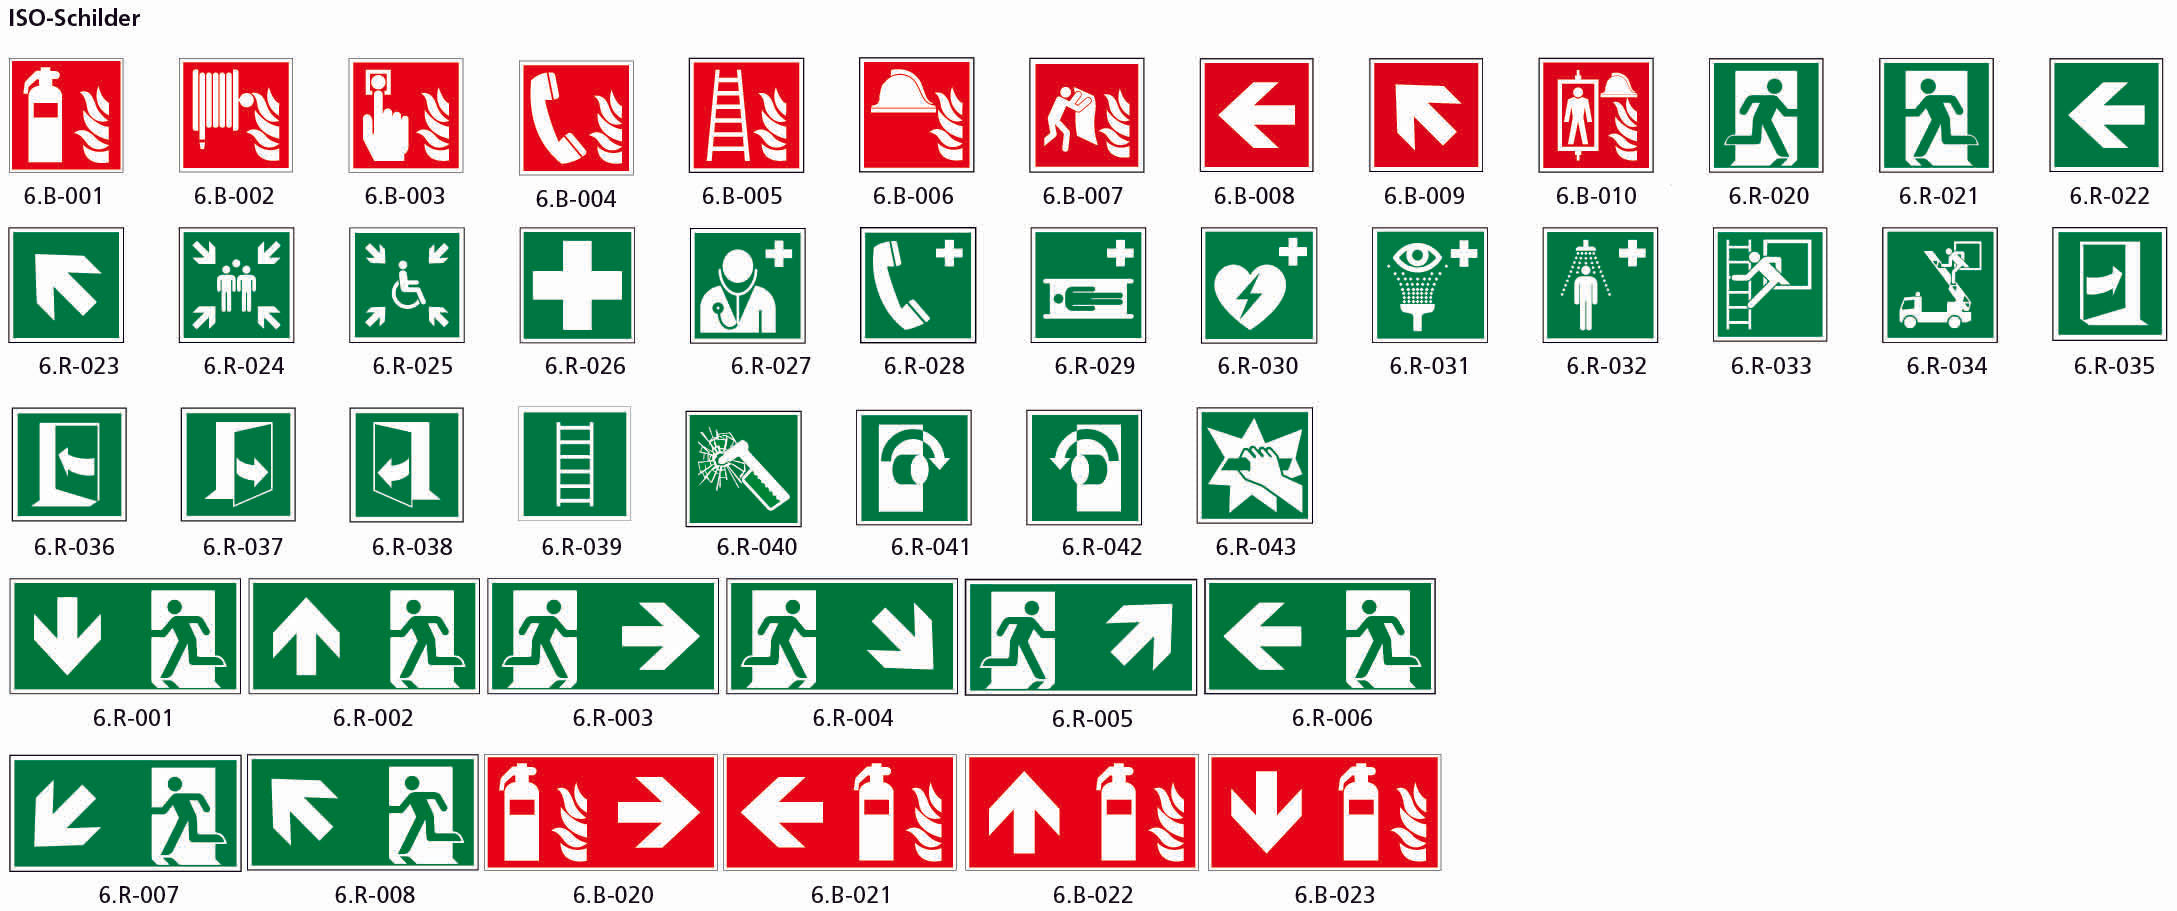 Fahnenschild doppelseitig, Rettungs- und Brandschutzzeichen, KU, 400 x 200 mm, gemäss Logobibliothek